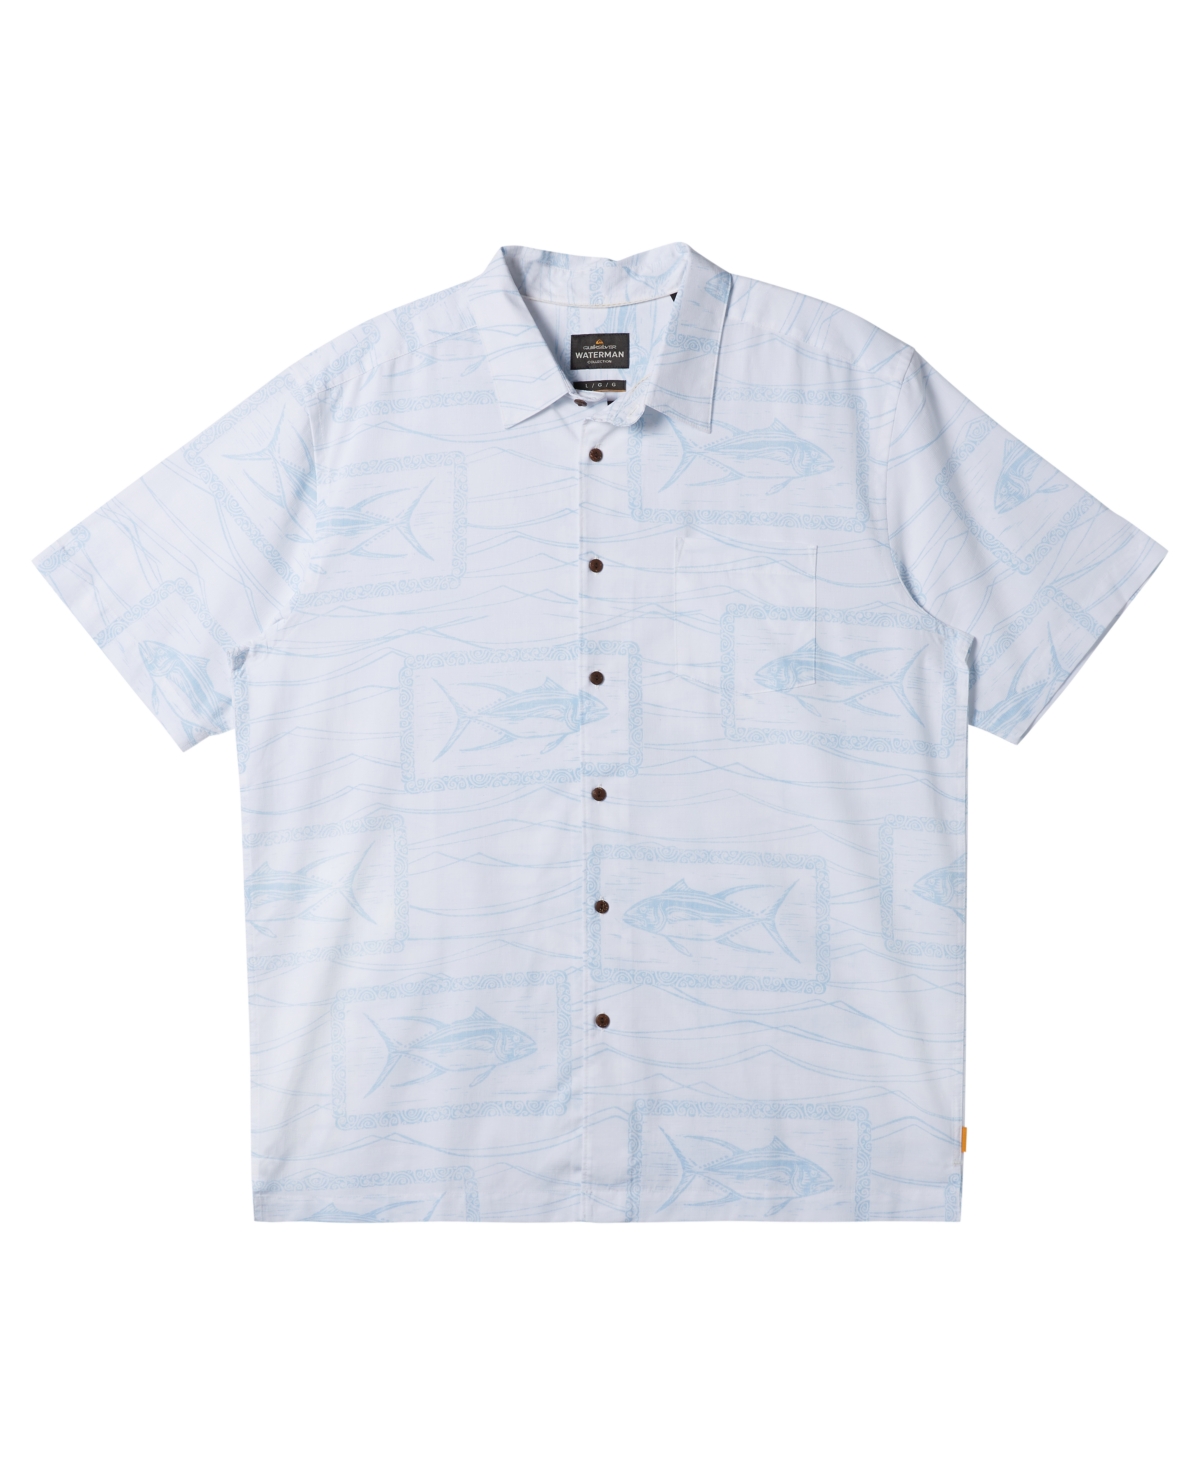 Men's Reef Point Short Sleeve Shirt - White